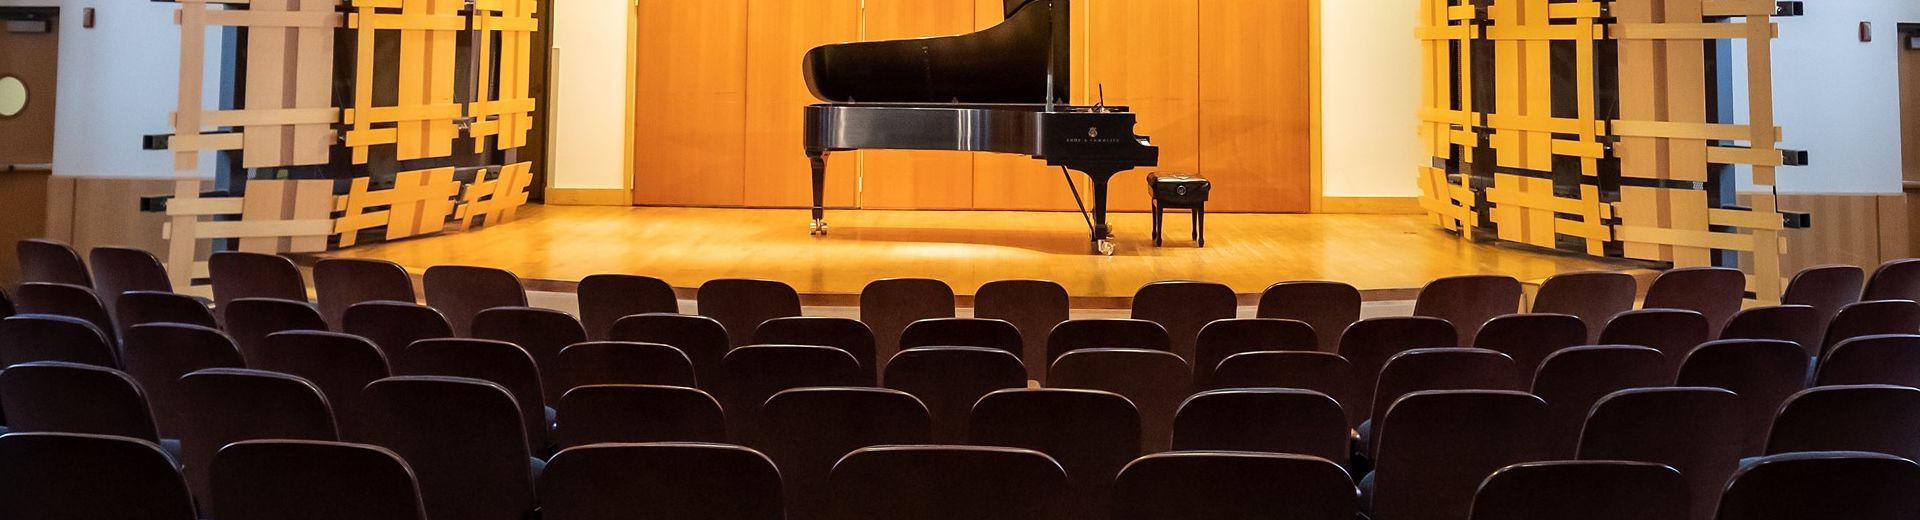 无人看管的钢琴在空礼堂的舞台上无人看管的钢琴. 